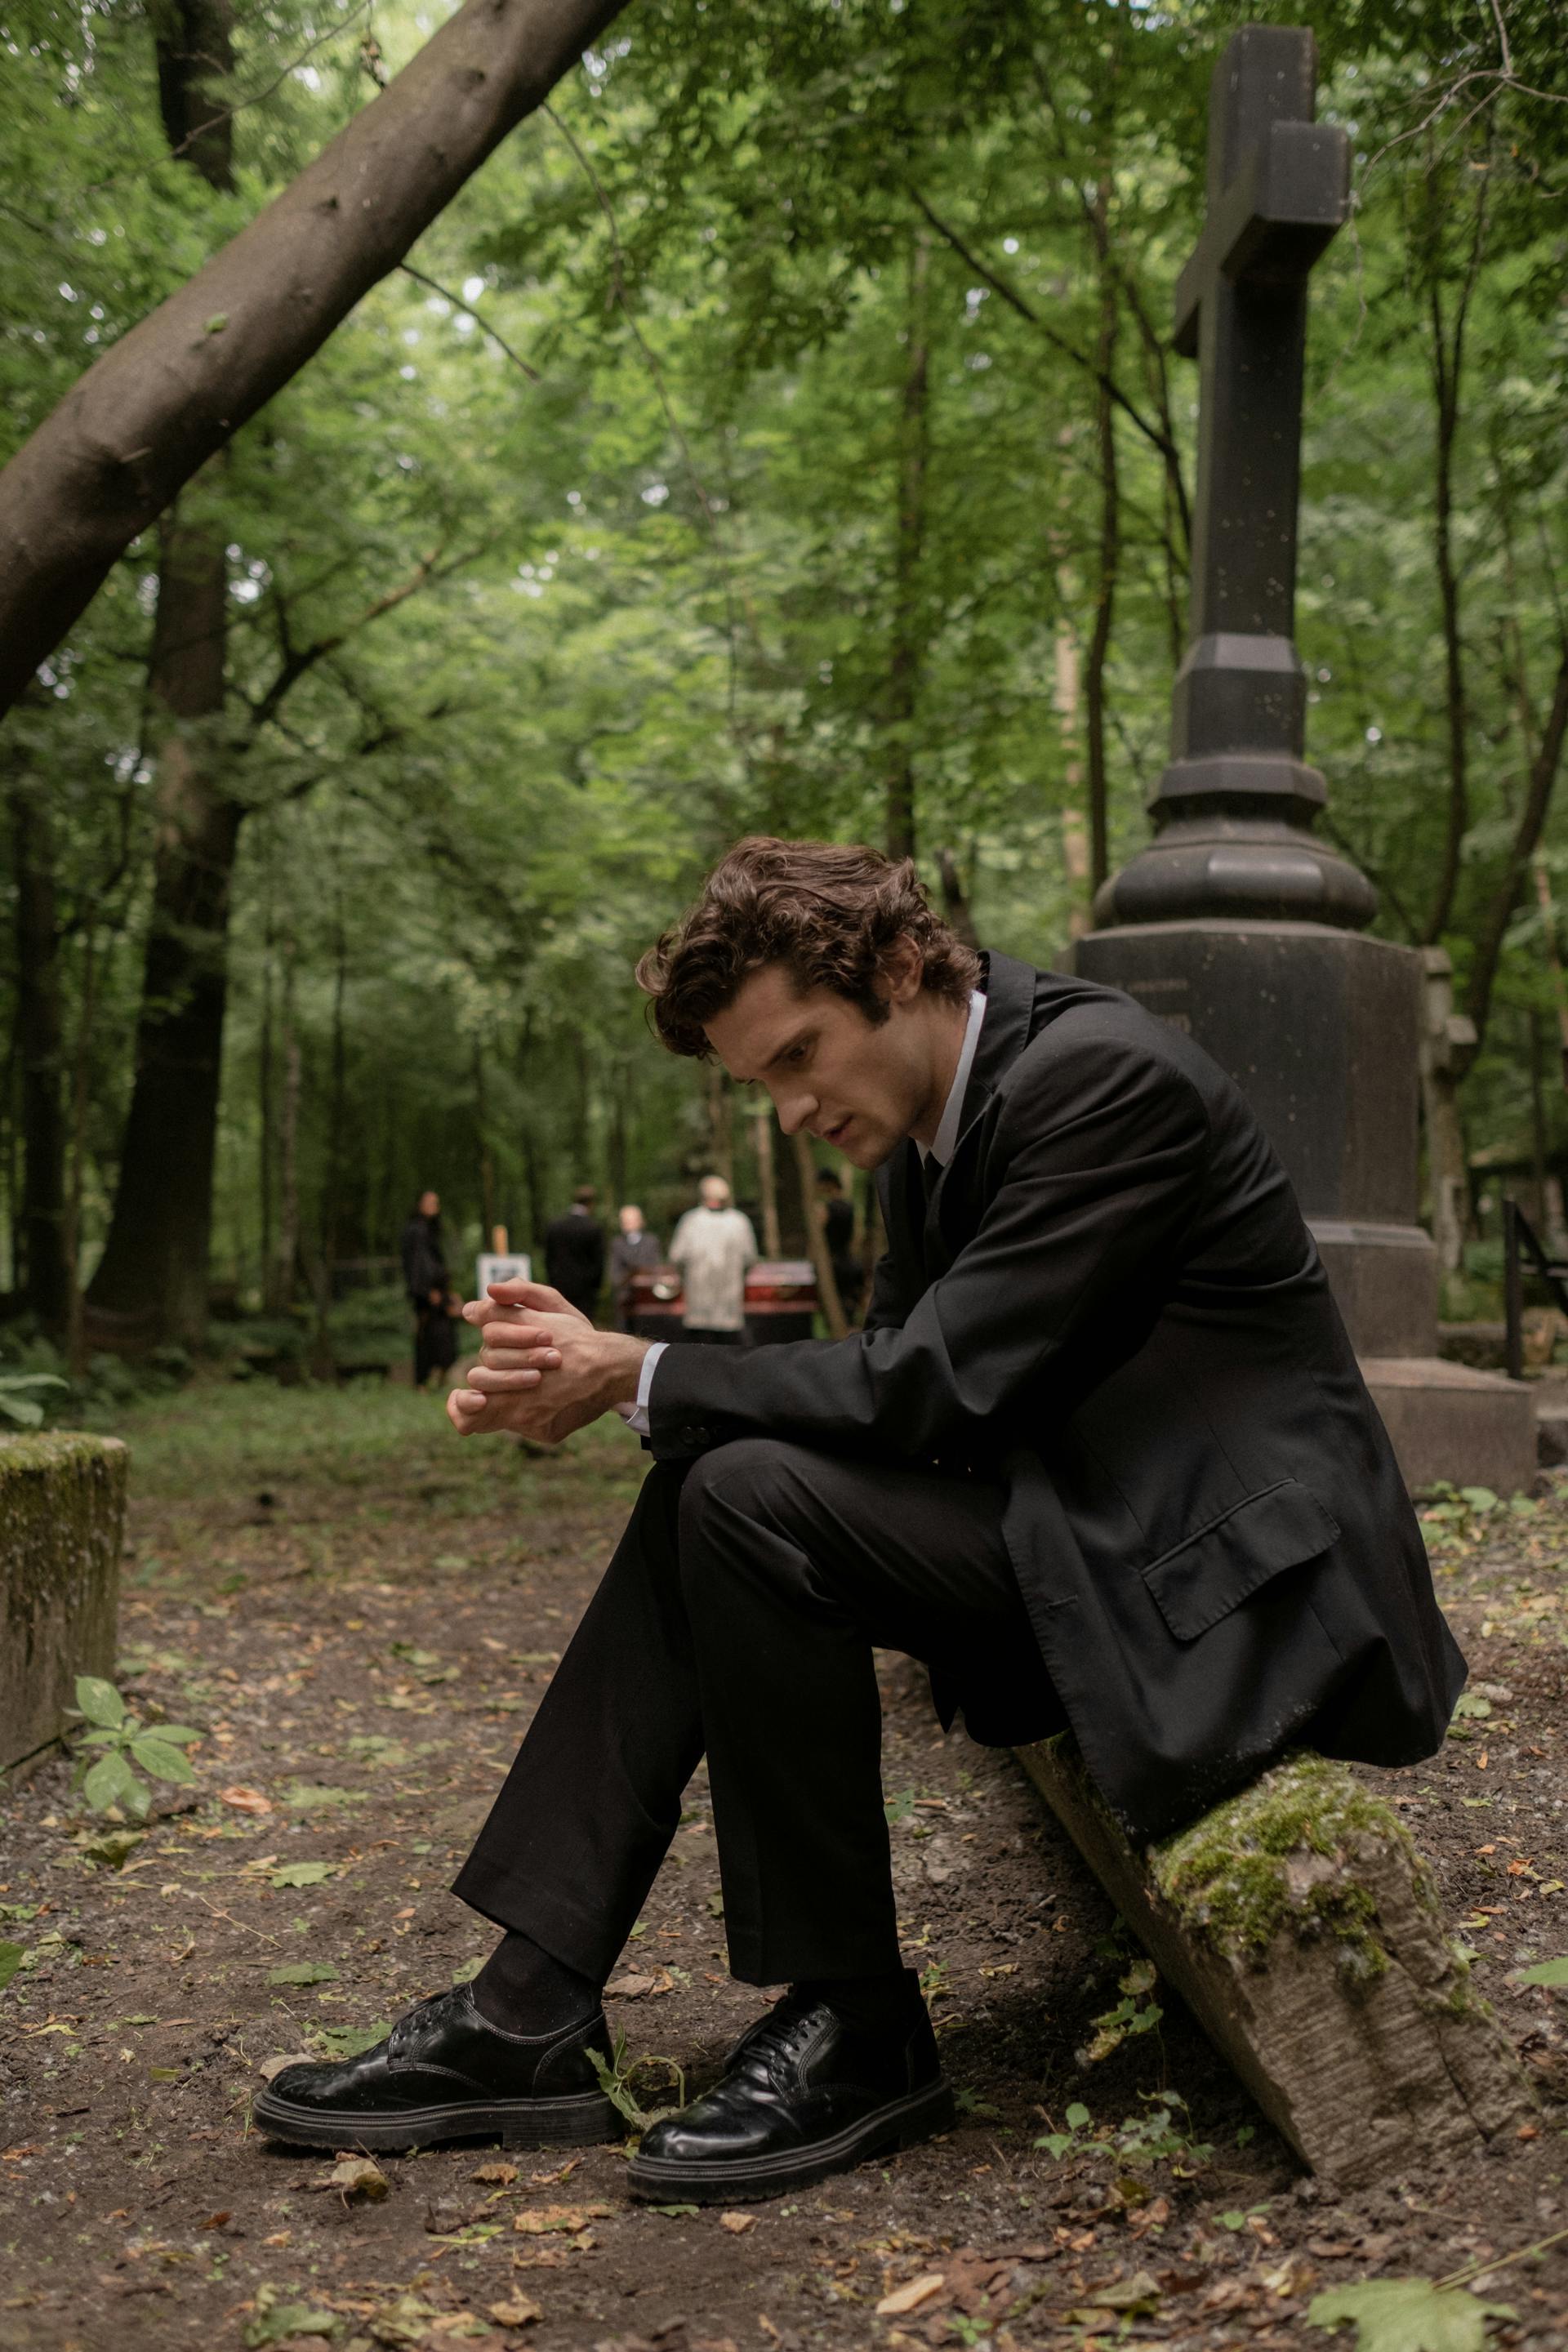 Un homme en costume et veste noirs assis dans un cimetière | Source : Pexels